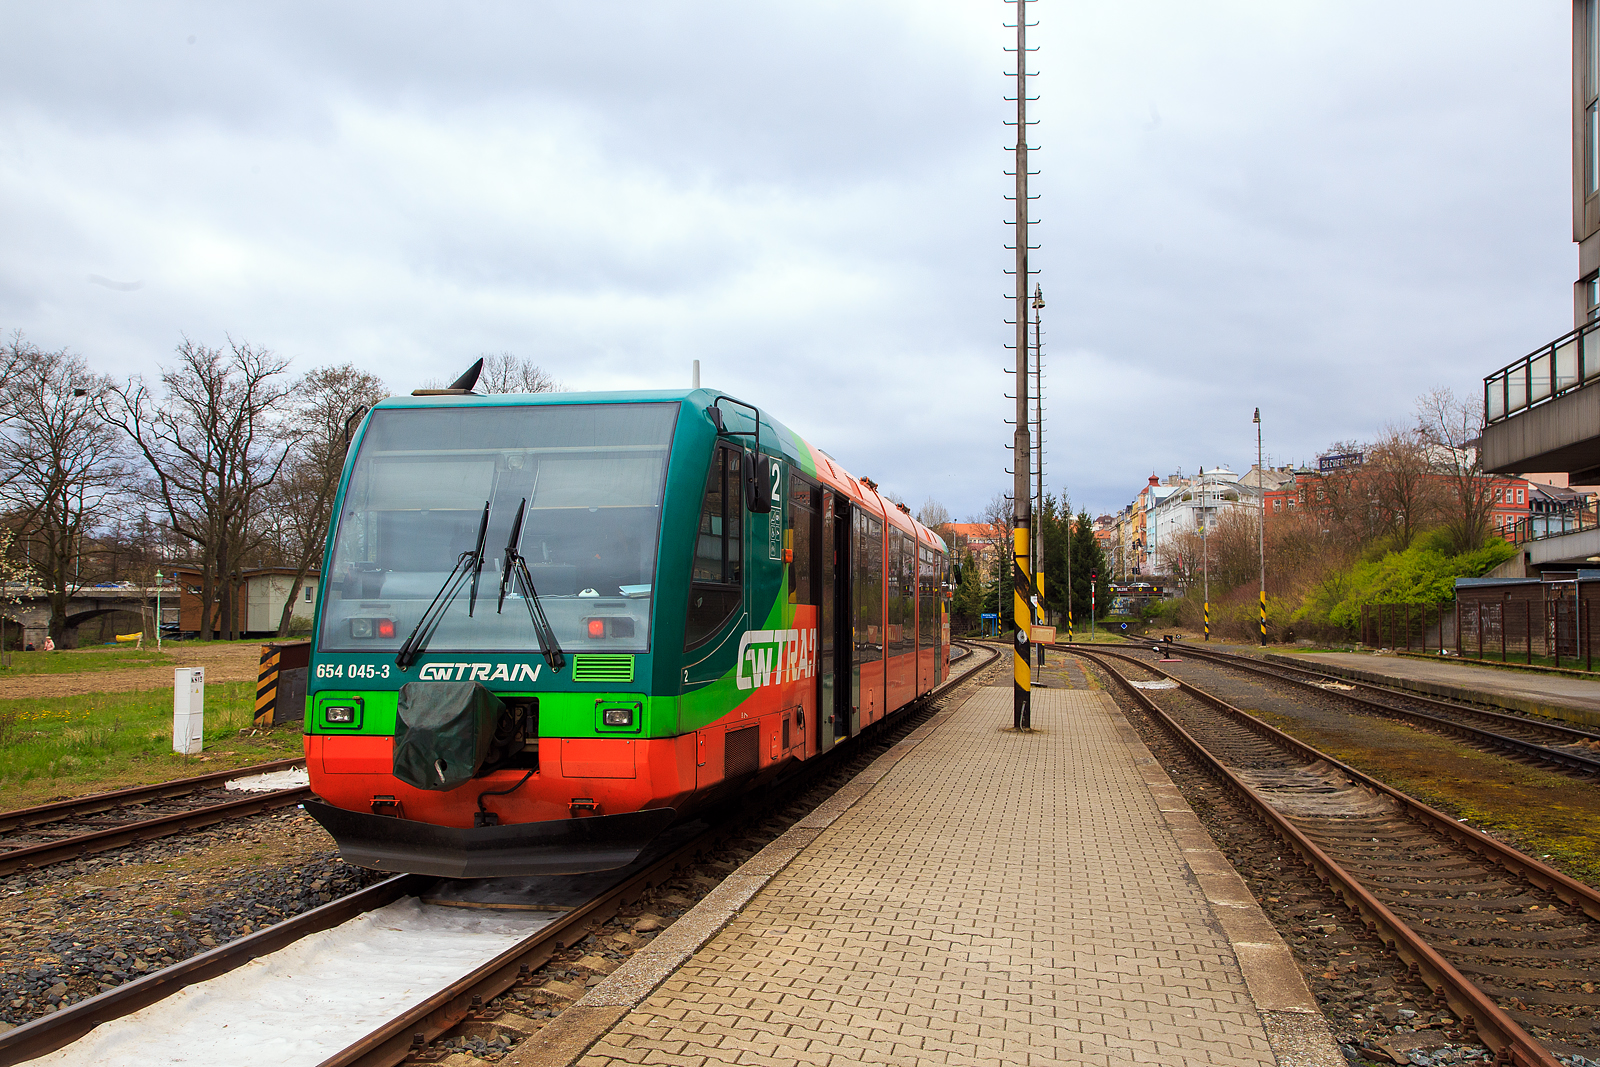 Nun steht der DUEWAG RegioSprinter 654 045-3 (95 80 0654 045-3 D-GWTR) der GW Train Regio a.s., ex VT 45 der Die Länderbahn, am 18.04.2023, als GW 7109 nach Marianske Lazne (Marienbad) via Becov nad Teplou(Petschau) im Bahnhof Karlovy Vary dolní nádraží (Karlsbad unterer Bahnhof) zur Abfahrt bereit.

Der RegioSprinter wurde 1997 von DUEWAG (Düsseldorfer Waggonfabrik AG) im Werk Uerdingen unter der Fabriknummer 91699 gebaut und an die Regental Bahnbetriebs-GmbH geliefert. Im Mai 2017 wurde er an die GW Train Regio nach Tschechien verkauft, ist aber weiterhin in Deutschland eingestellt. Vor der Inbetriebnahme in Tschechien wurde eine Modernisierung bei CZ Loko durchgeführt.
